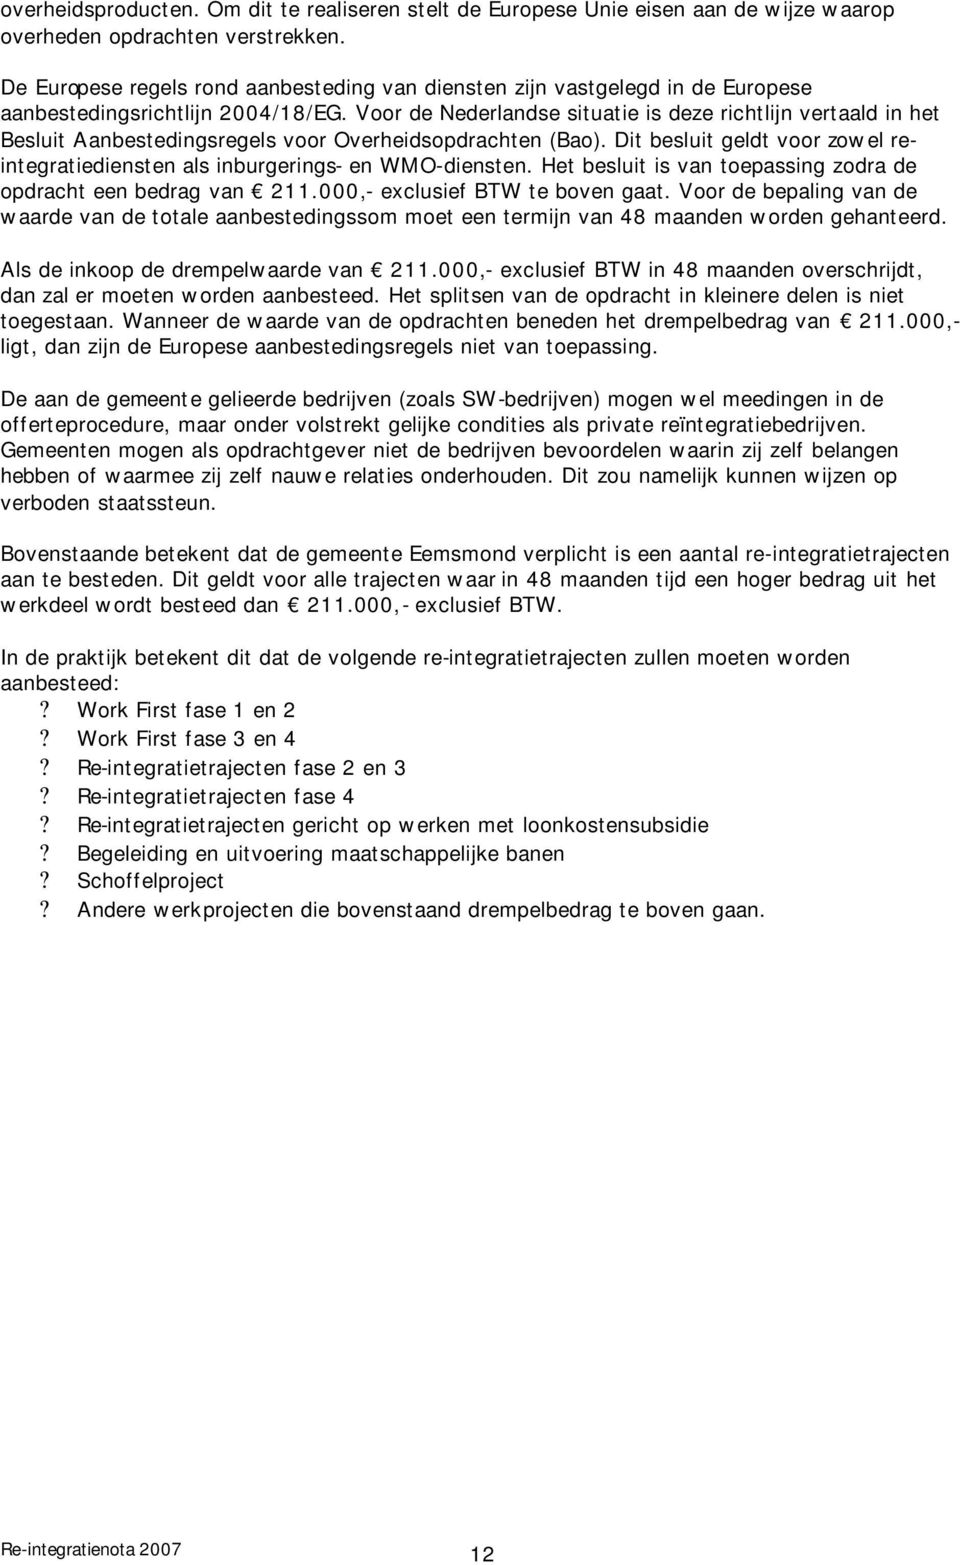 Voor de Nederlandse situatie is deze richtlijn vertaald in het Besluit Aanbestedingsregels voor Overheidsopdrachten (Bao).